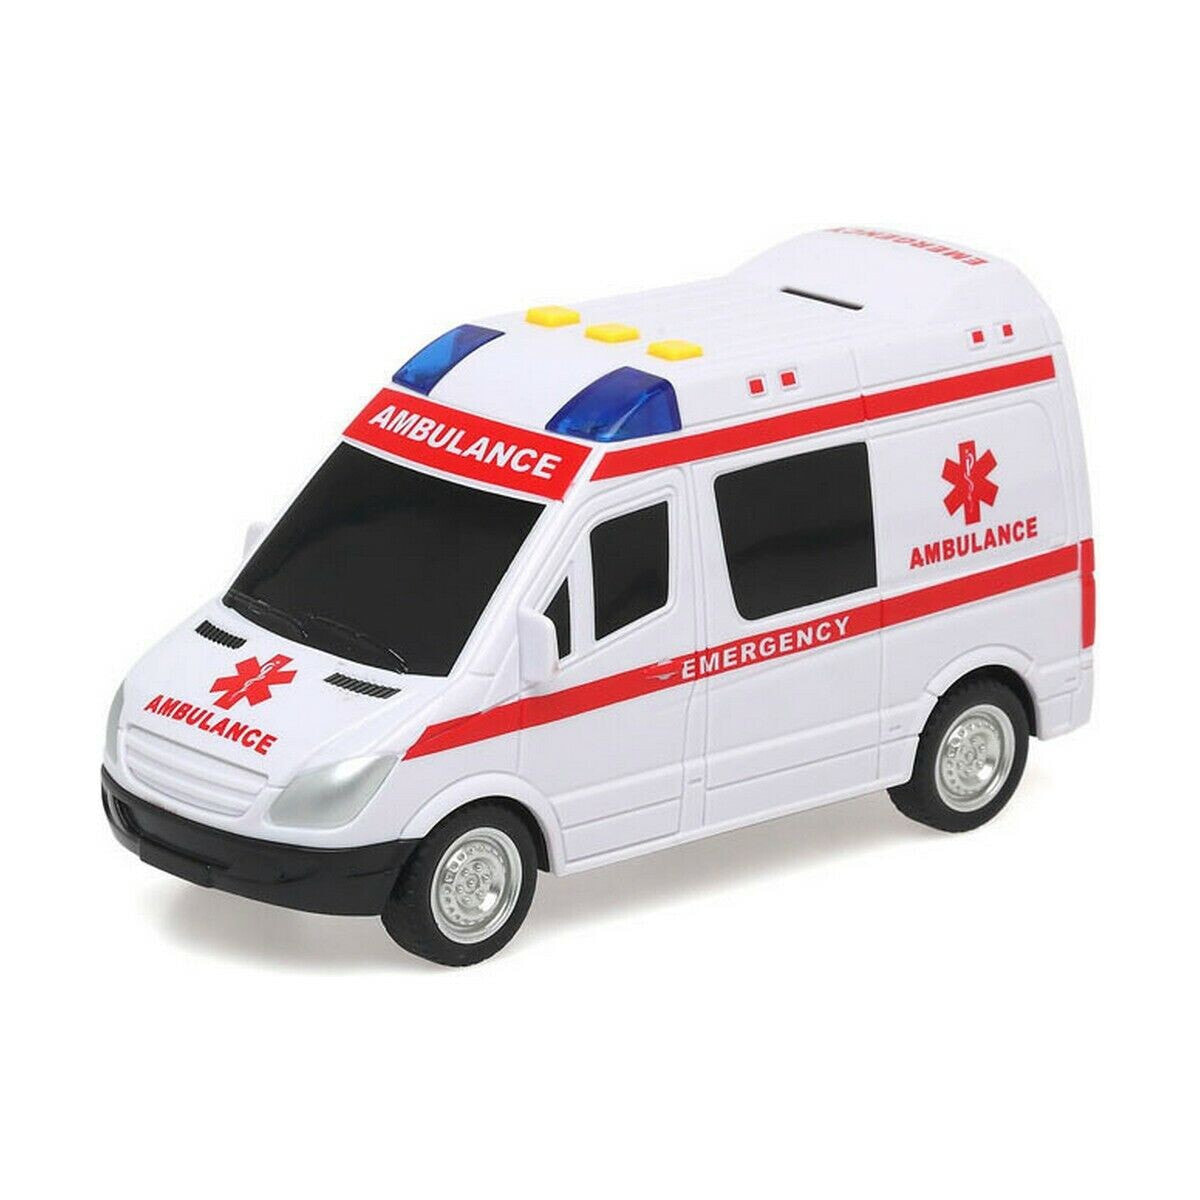 Lorry City Rescue Ambulance